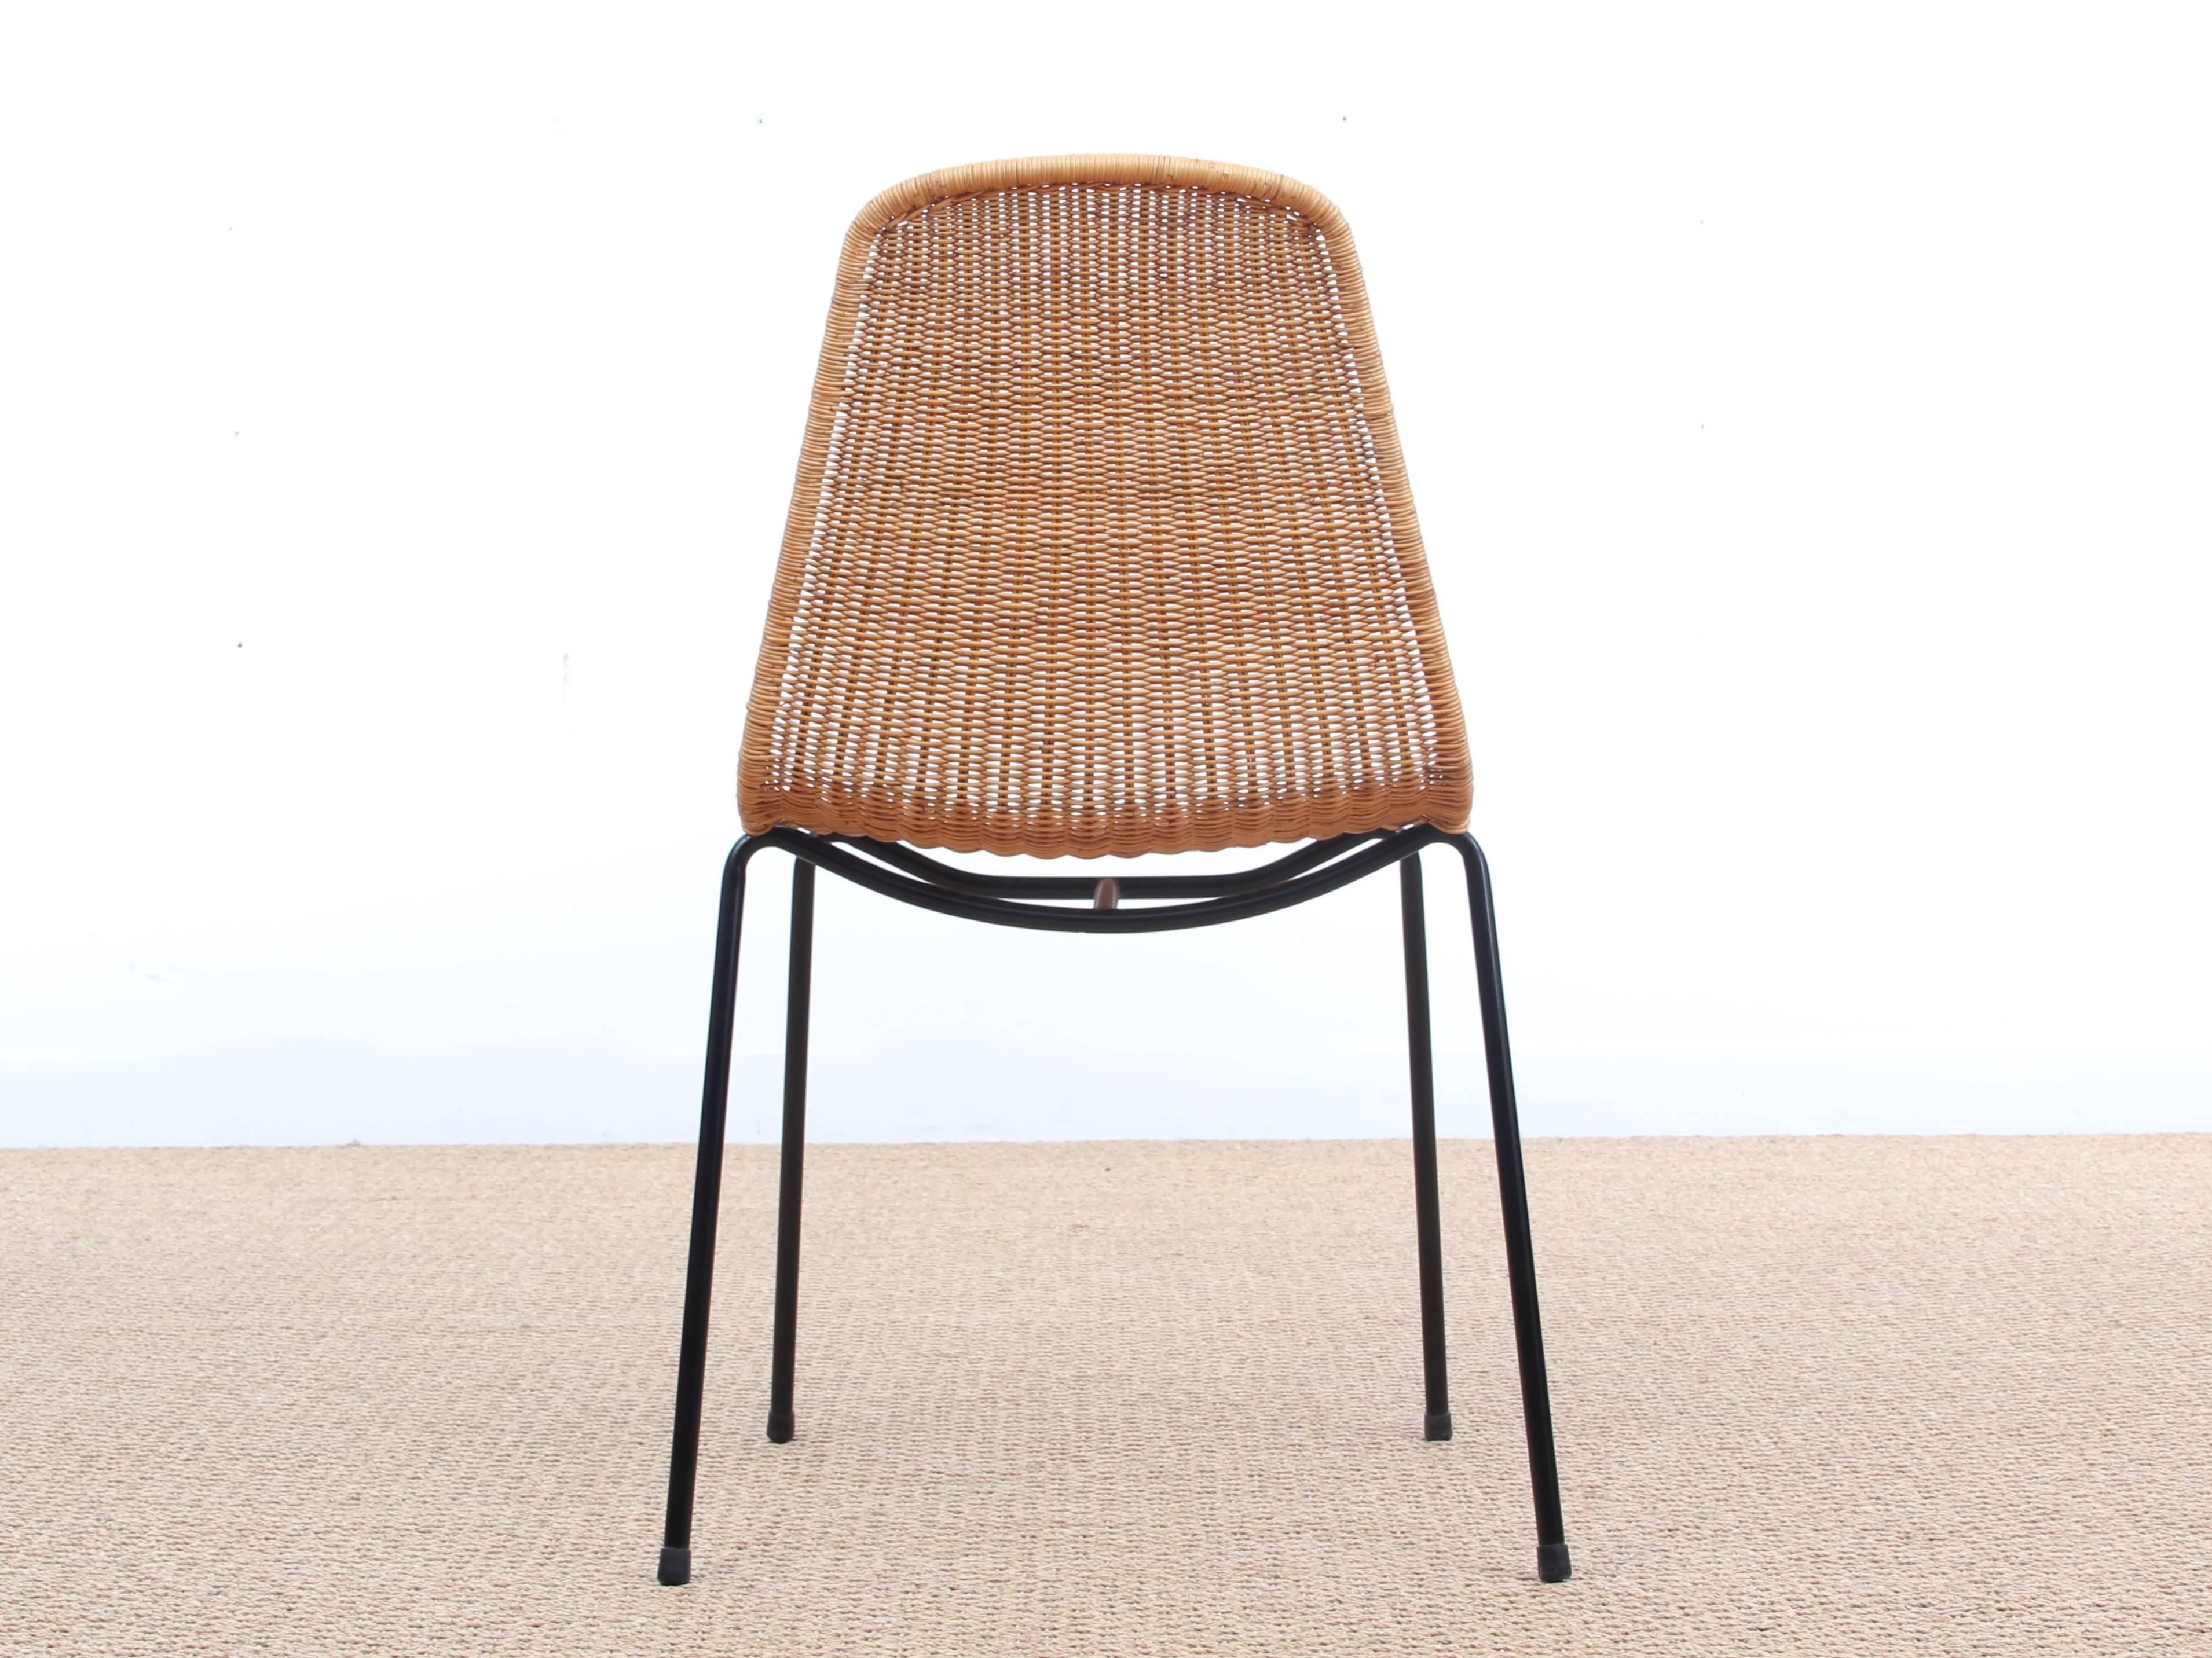 Der Korbstuhl des Schweizer Designers Gian Franco Legler wurde 1951 für das Restaurant Basket in Italien entworfen. Dieser bequeme Stapelstuhl wurde 1953 vom Museum of Modern Art (MoMA) in New York mit dem 